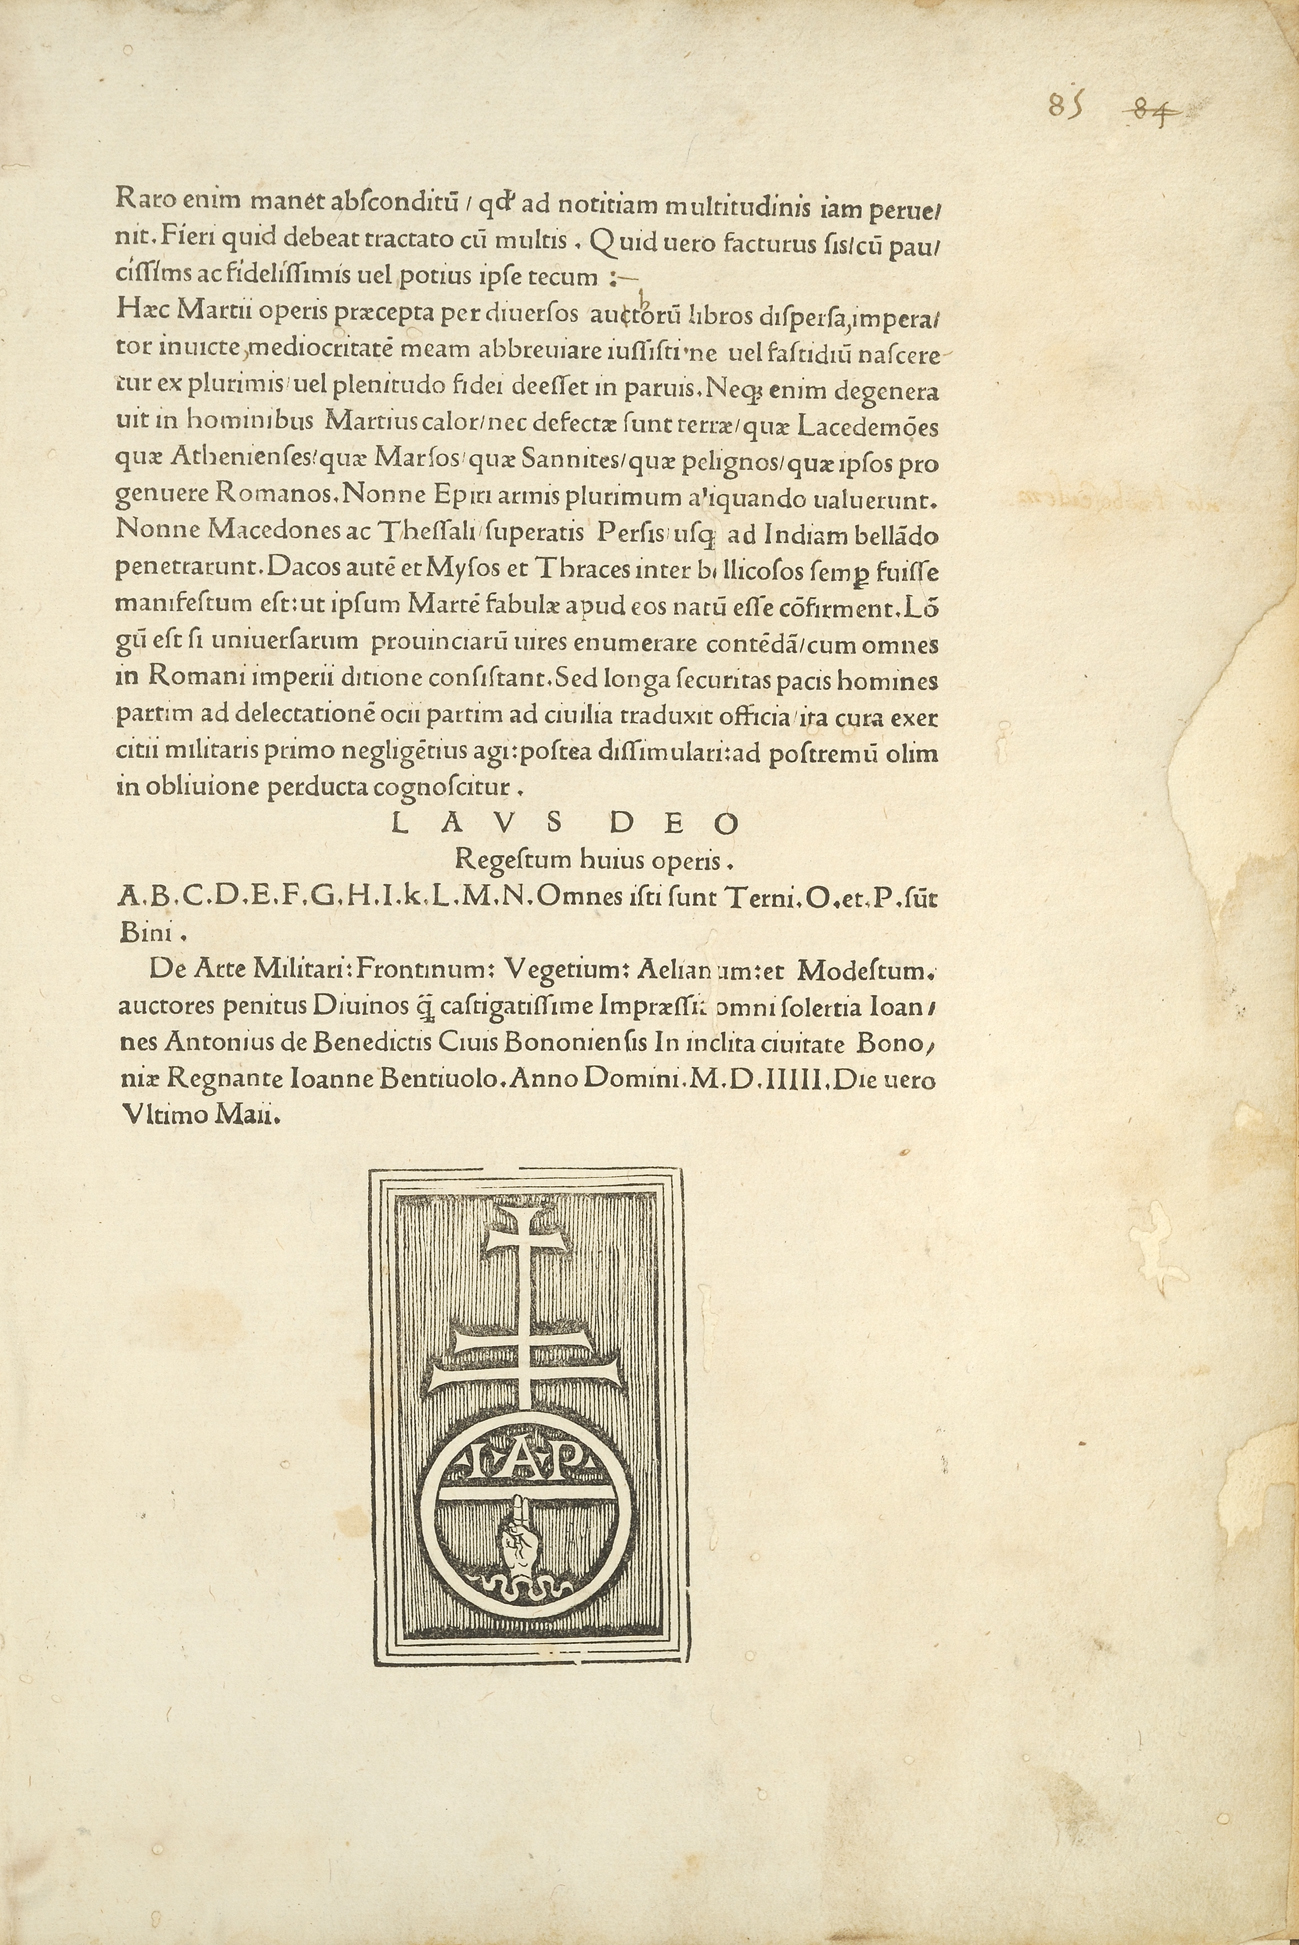 De re Militari, Flavius Vegetius Renatus, Bononiae: Ioannes Antonisu de Benedictis, 1505